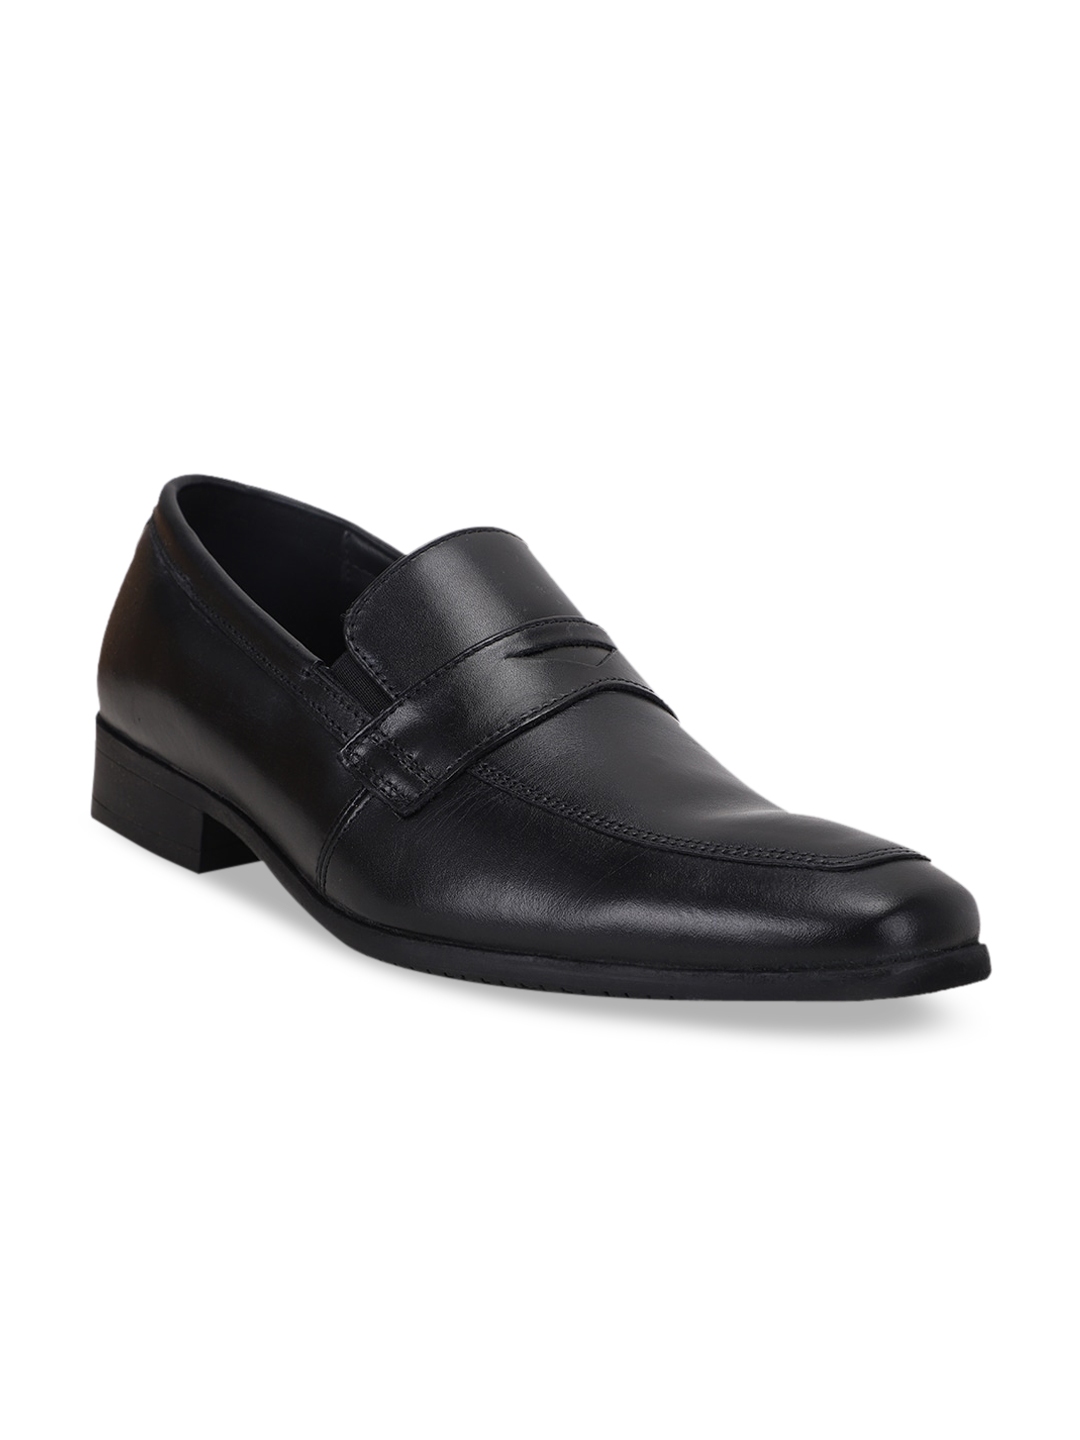 Buy Bata Men Black Solid Leather Loafers - Formal Shoes for Men ...